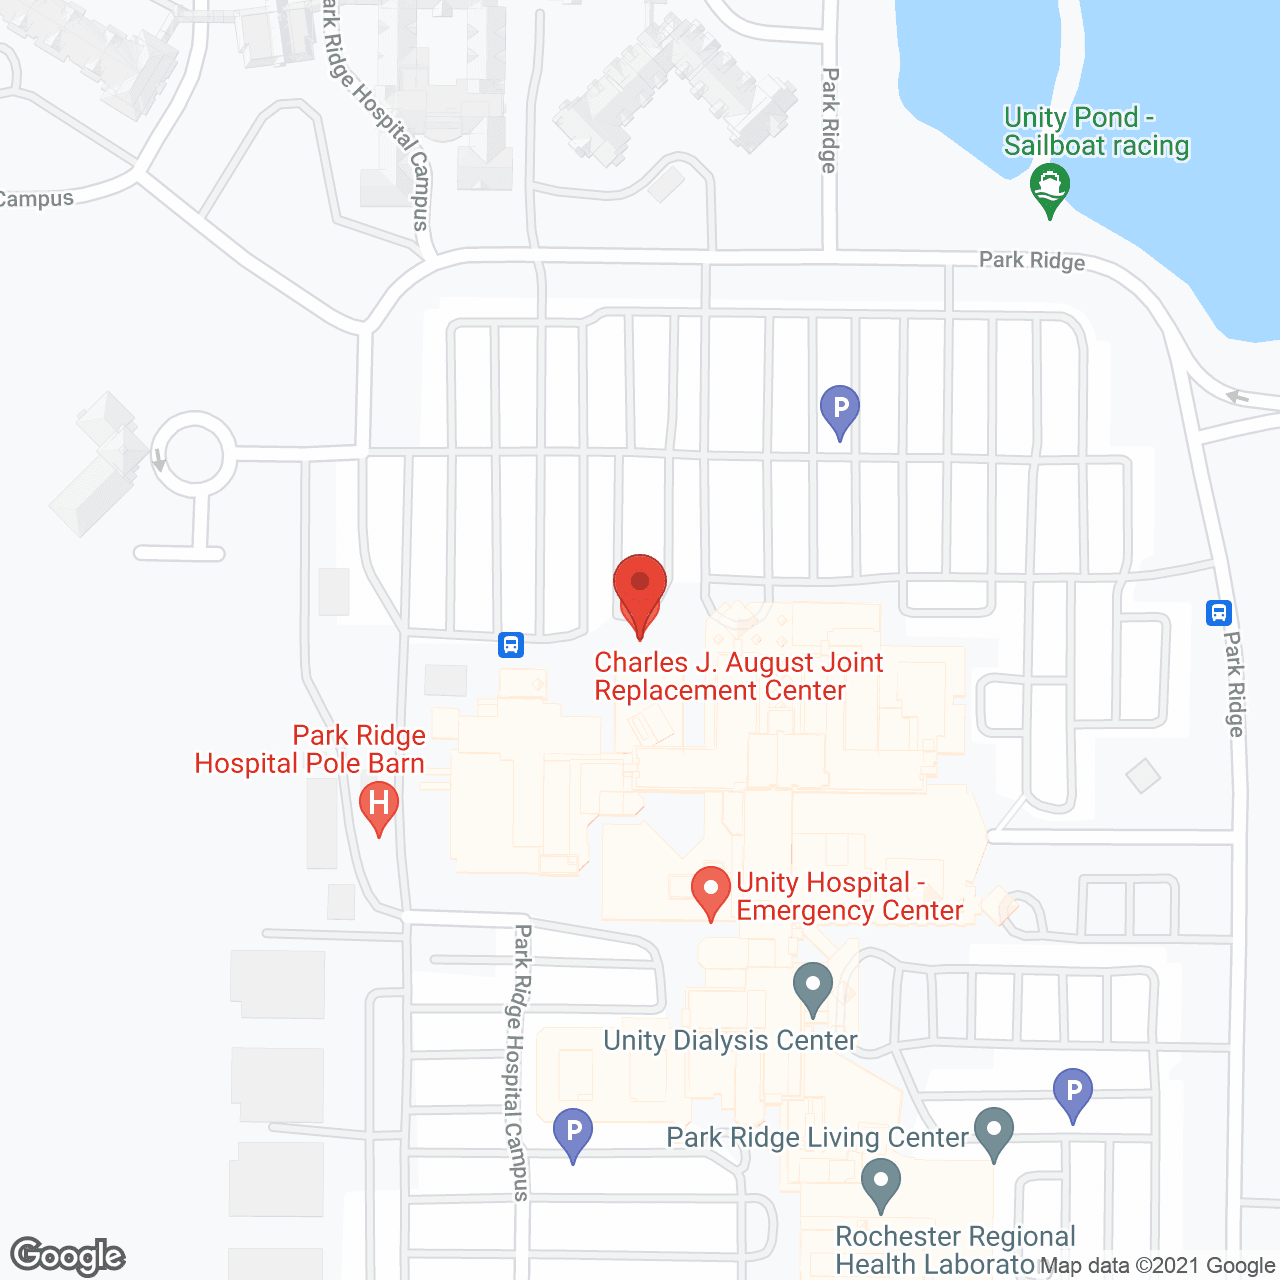 Park Ridge Living Center in google map